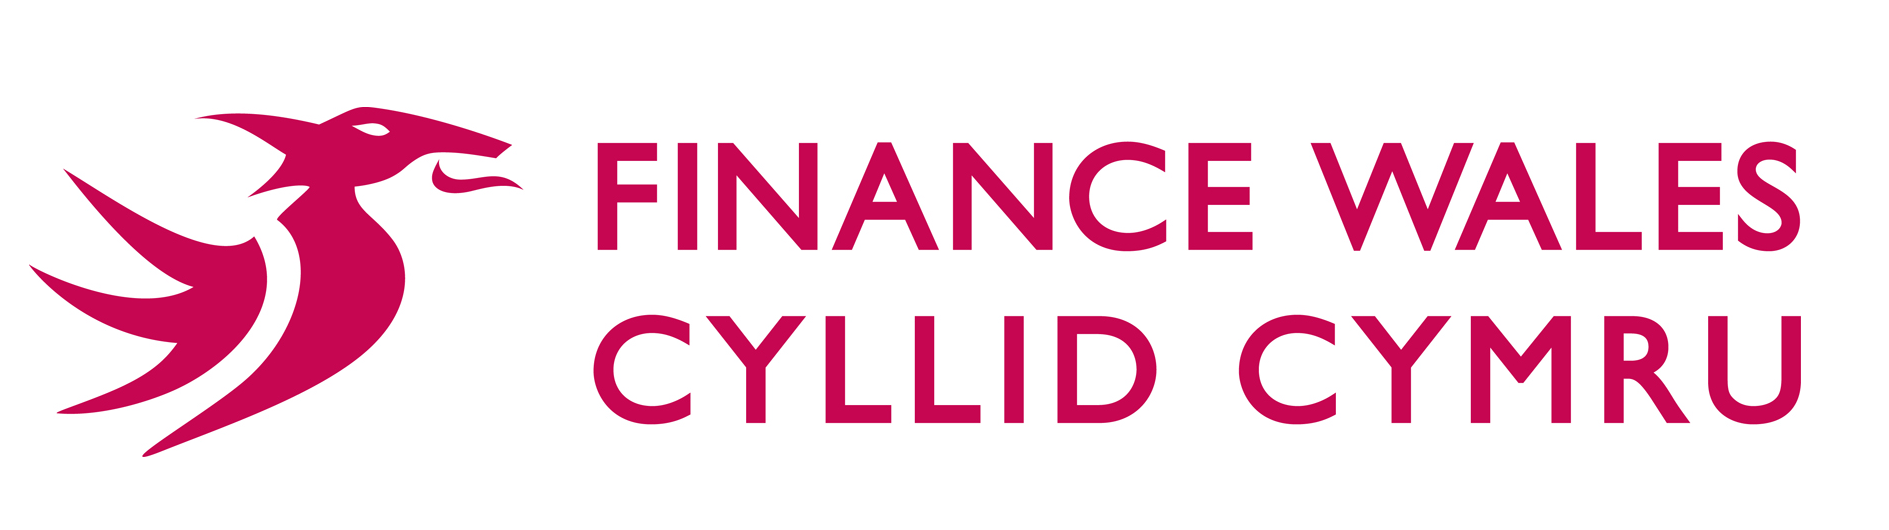 Finance Wales